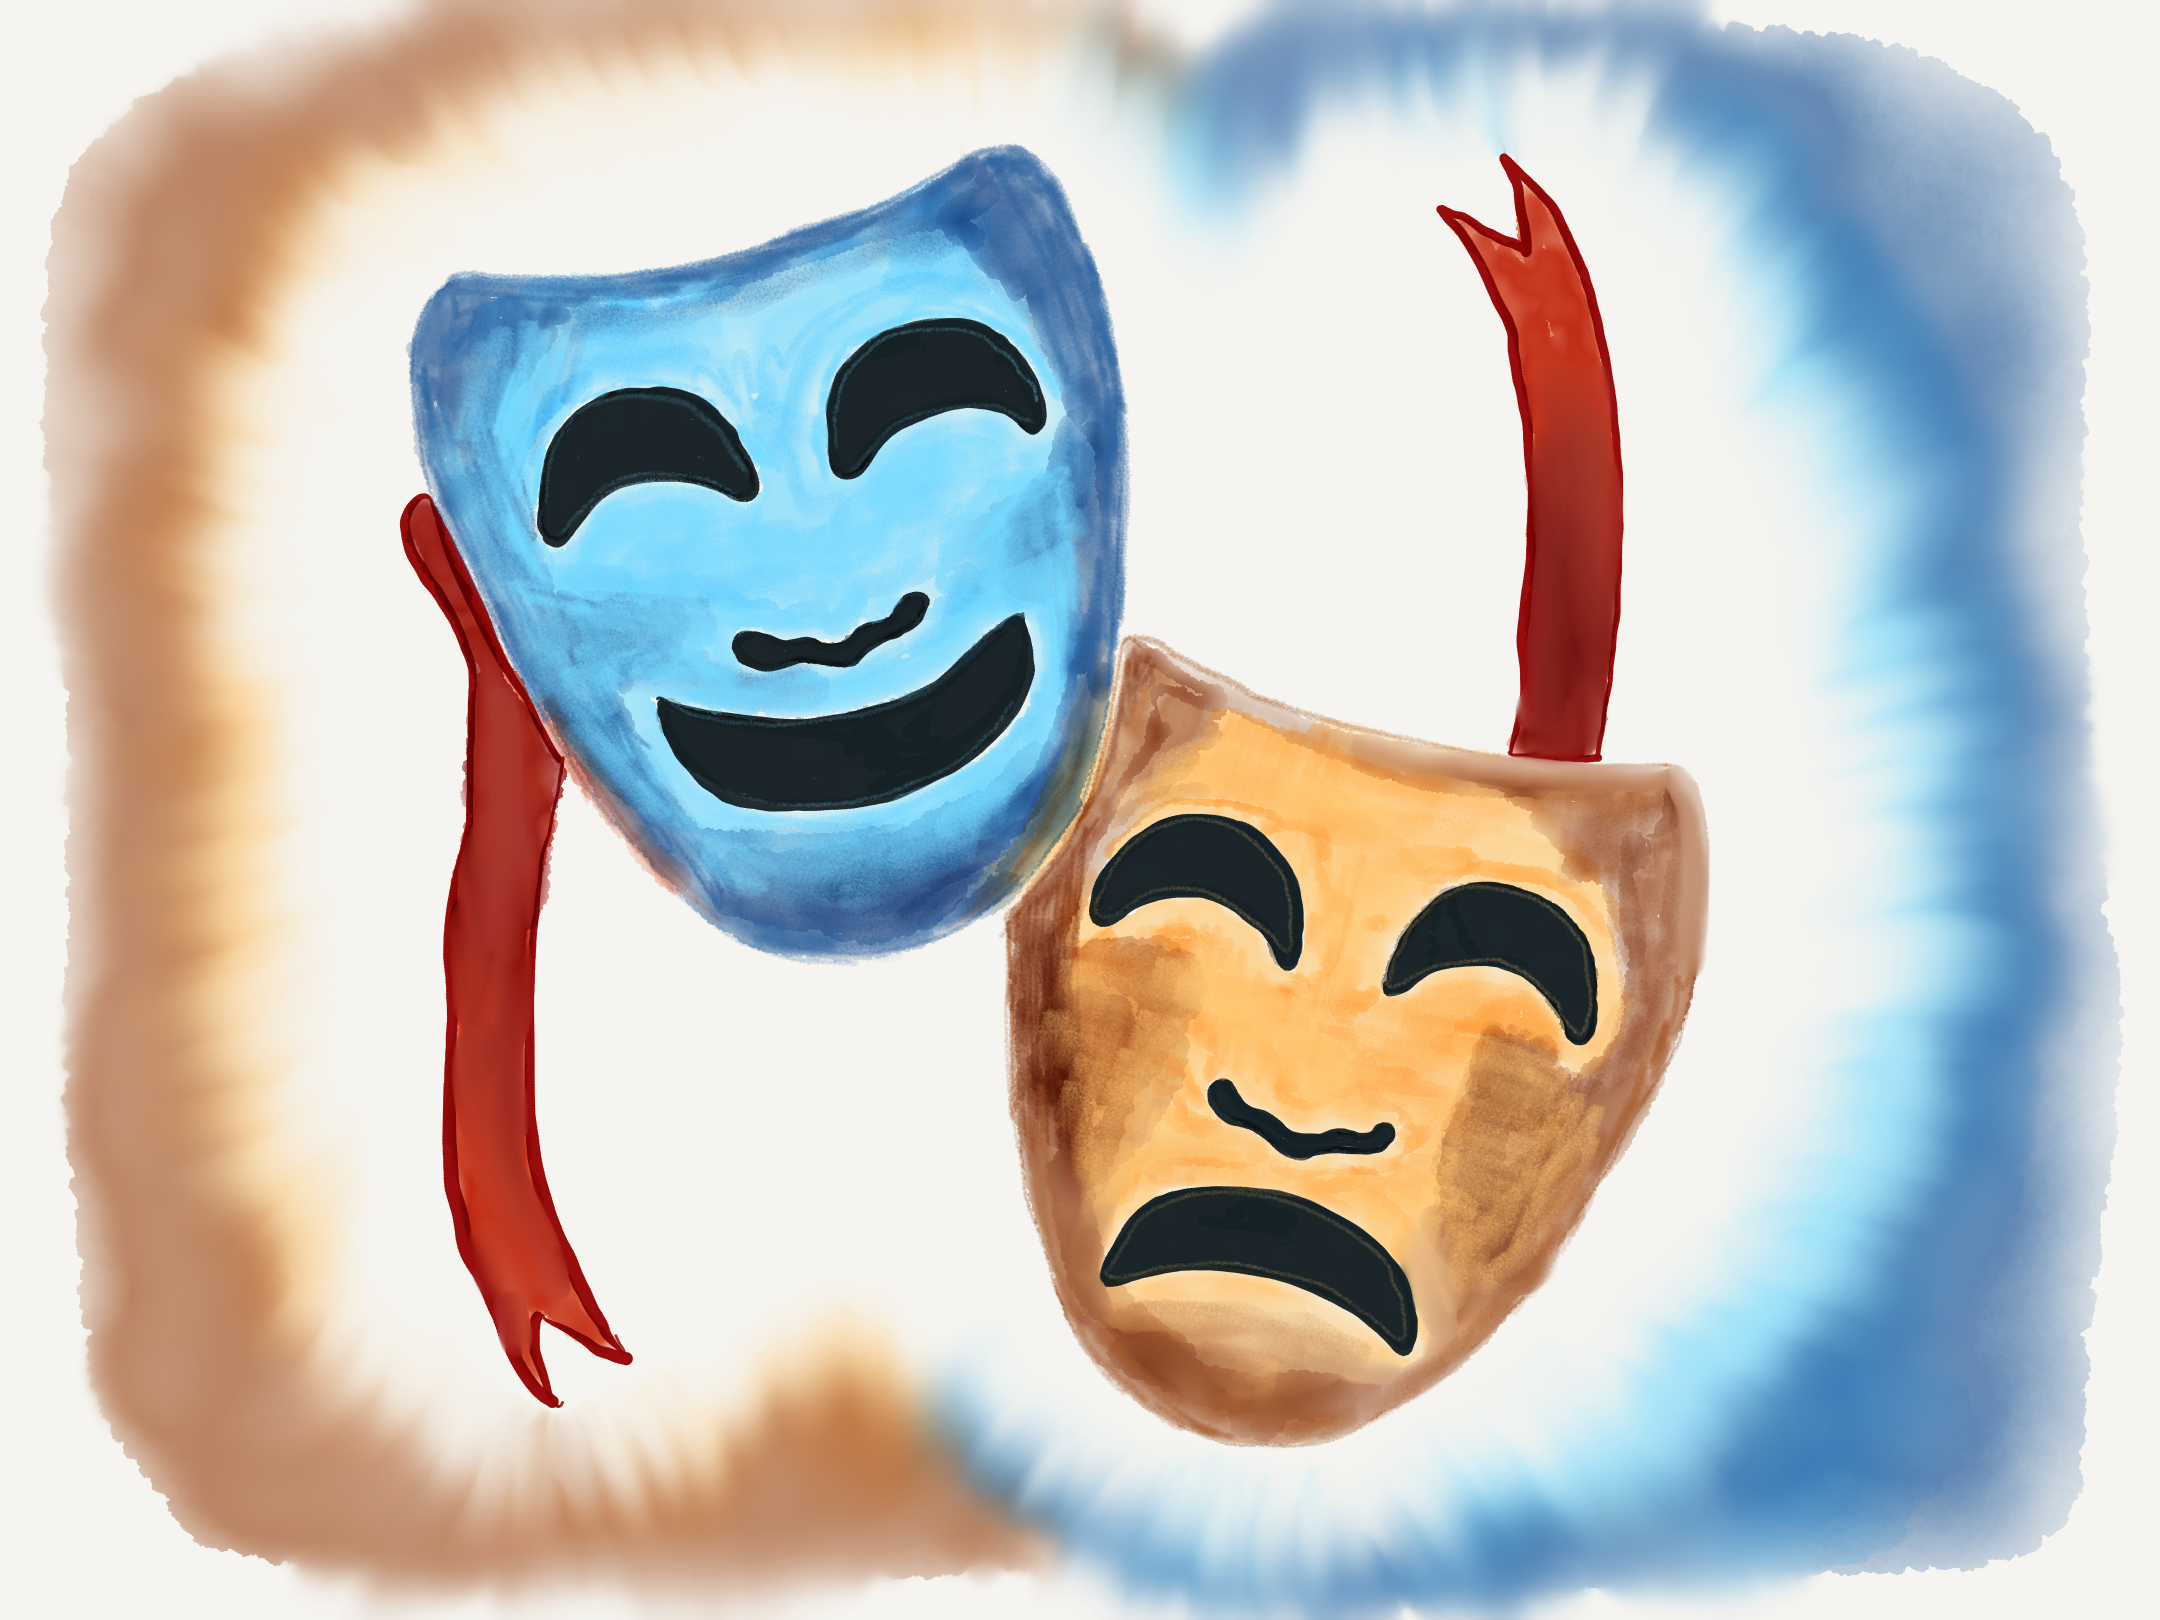 Håndtegning af emoji med to græske masker, en glad og en vred